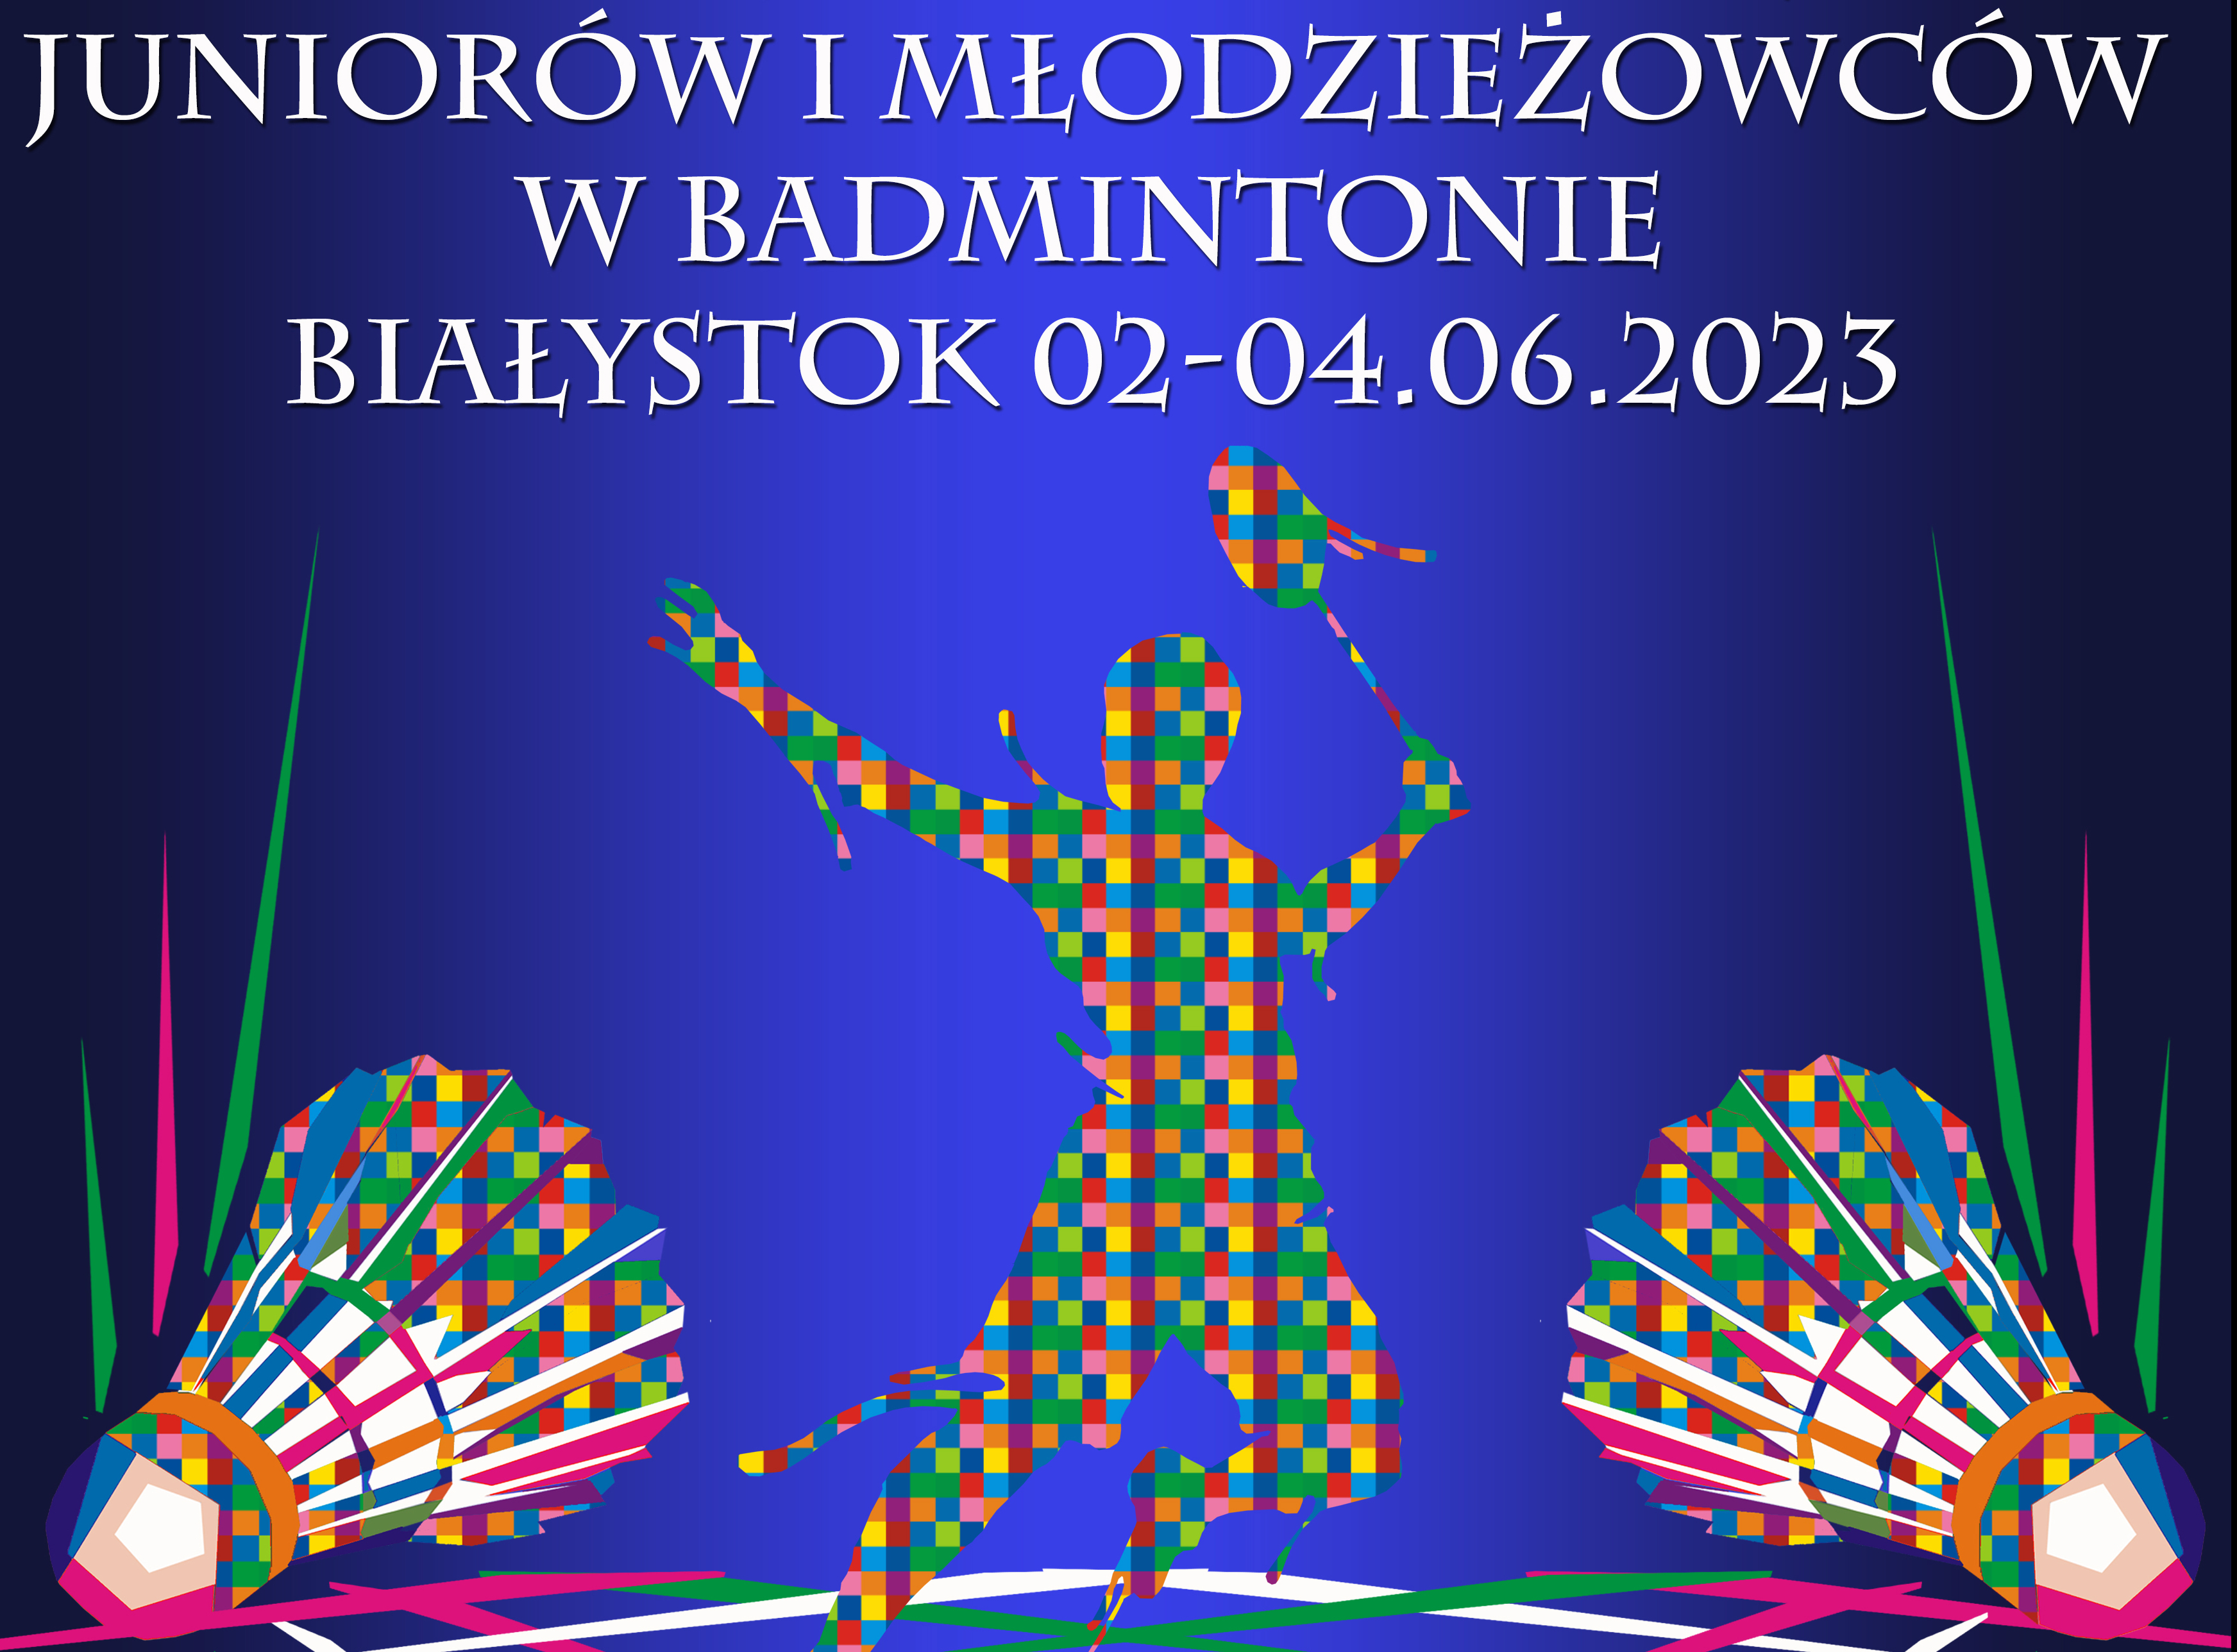 Mistrzostwa Polski Juniorów i Młodzieżowców w Badmintonie